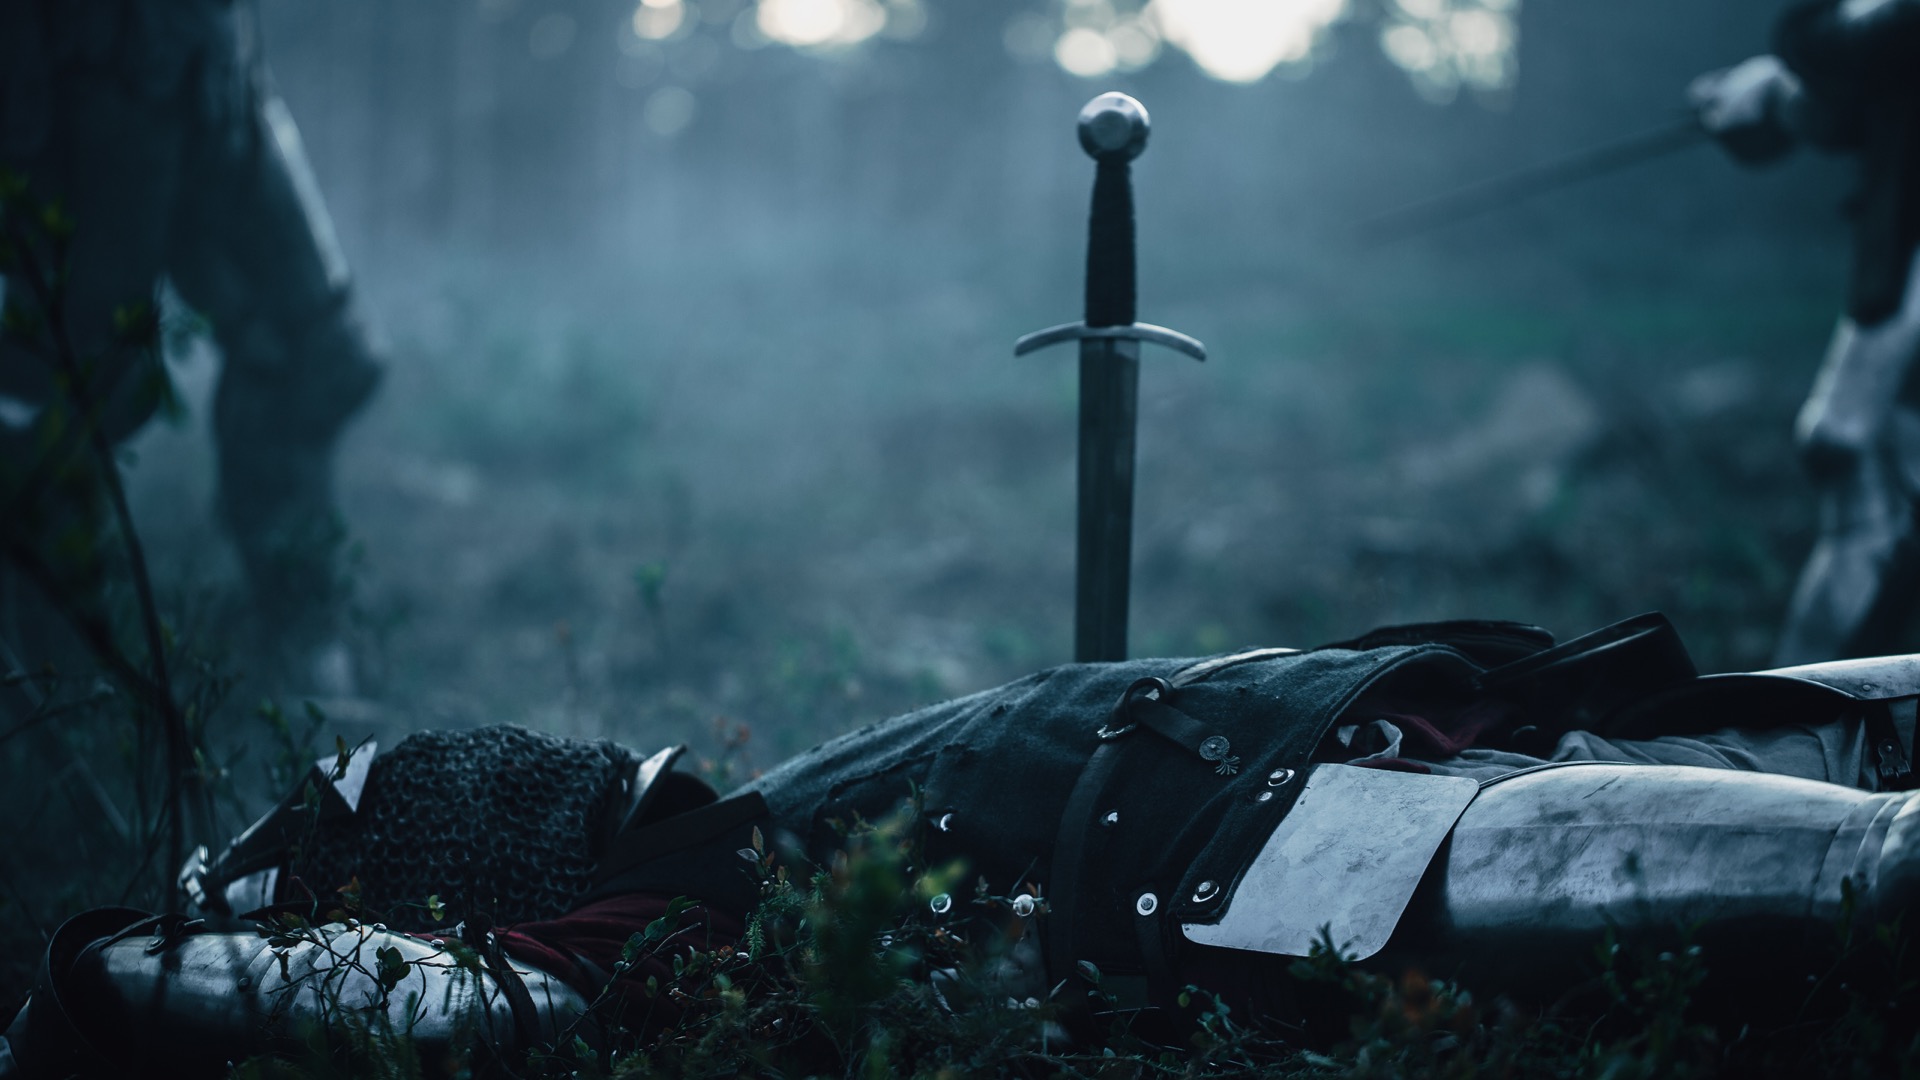 Qui est cet homme, meurtri de plusieurs coups d'épée lors de sa fuite ? Un cold case médiéval à résoudre. © Gorodenkoff, Adobe Stock